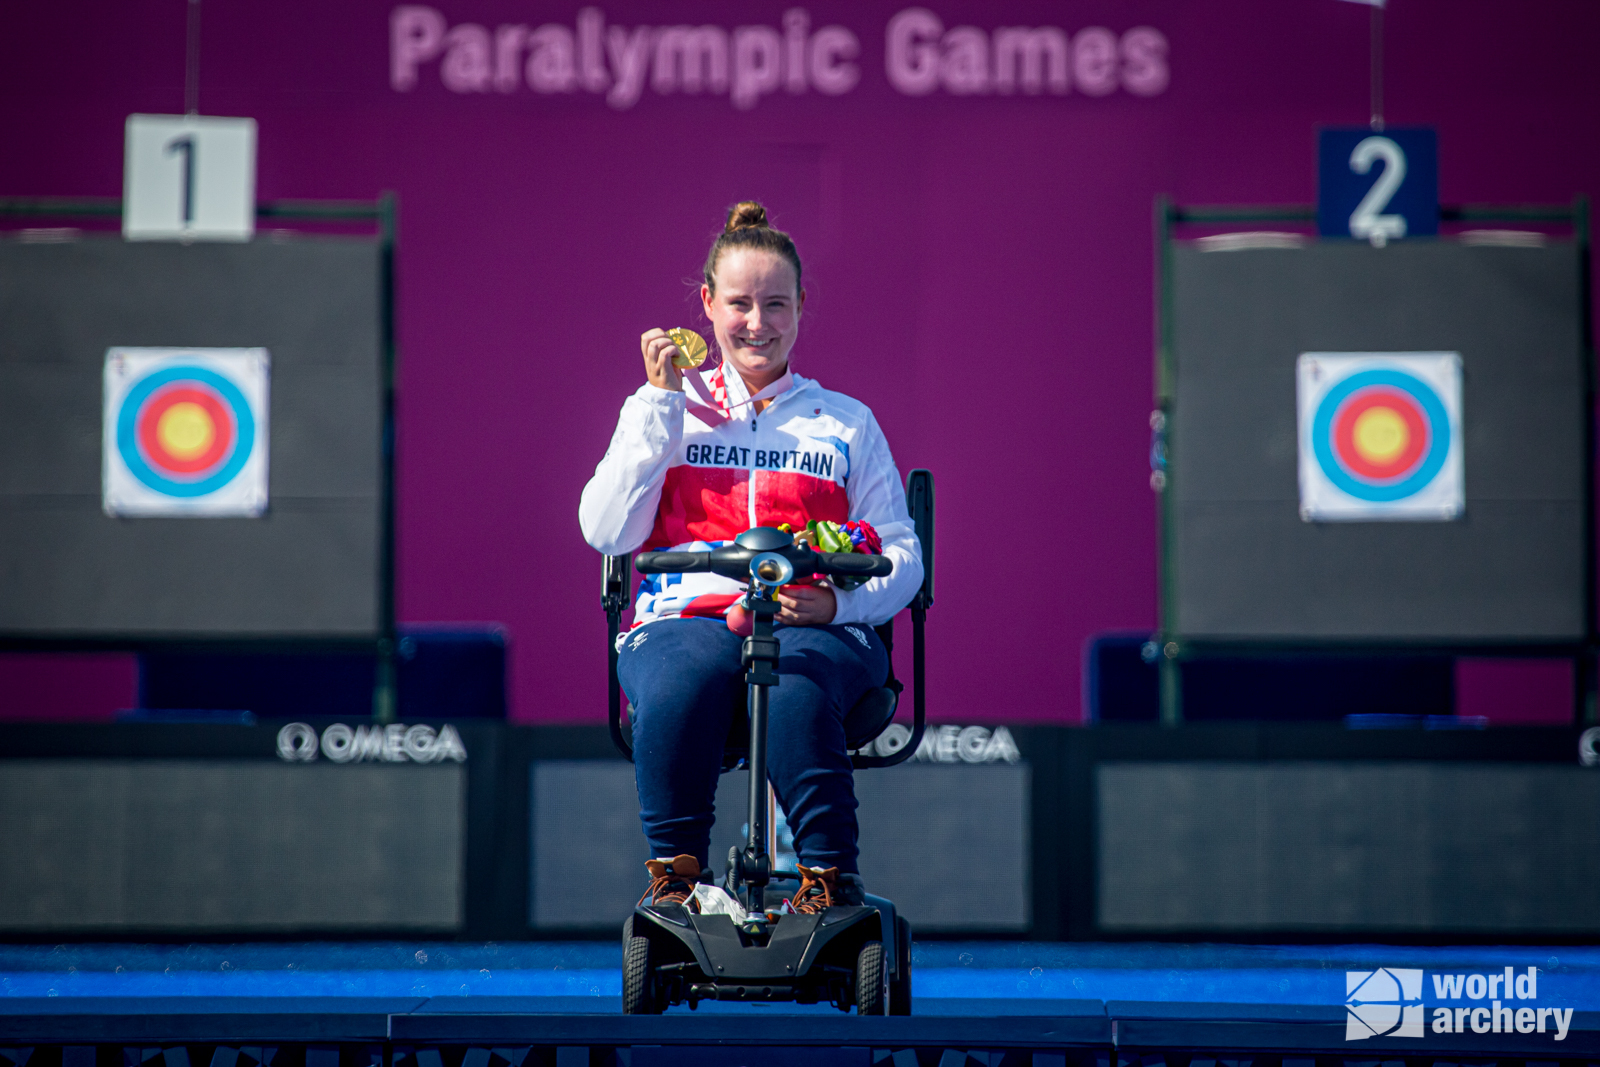 Phoebe Paterson Pine winning gold at Tokyo 2020